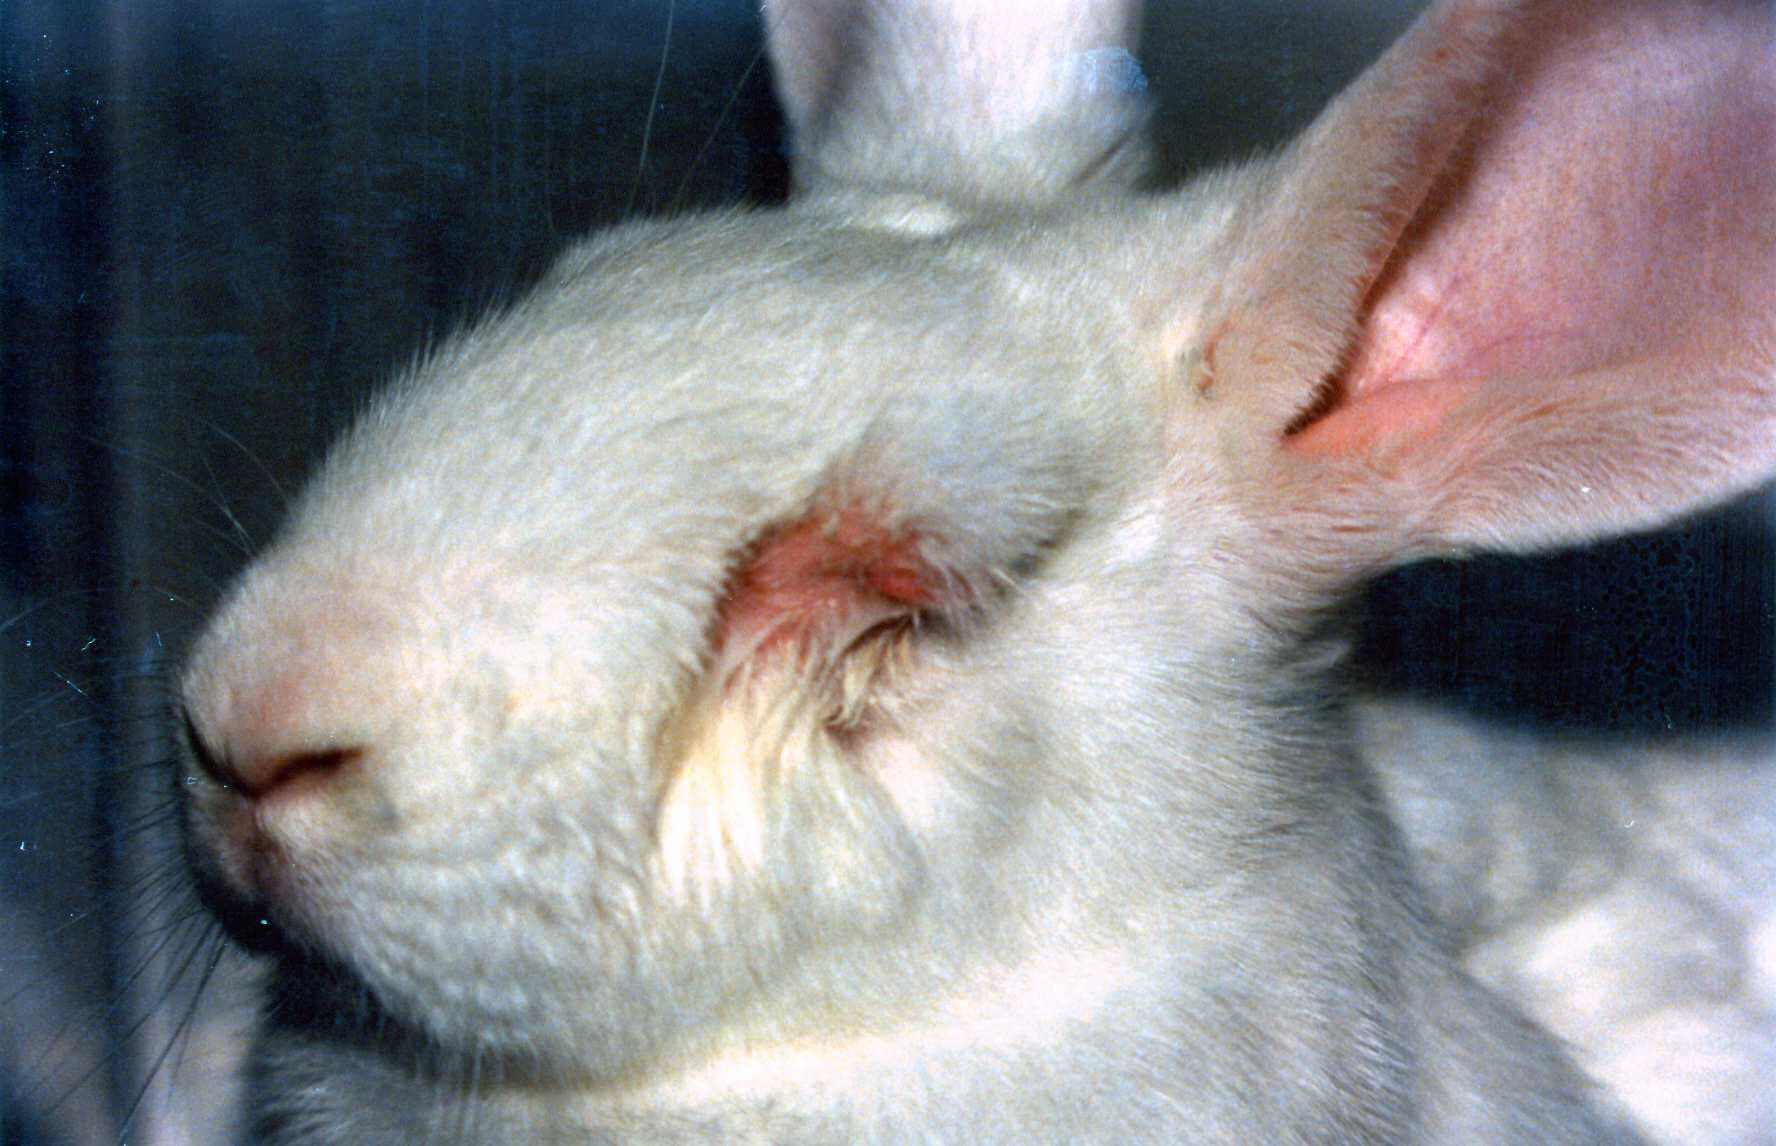 Las 5 razones más importantes para detener la experimentación animal | Blog | PETA Latino